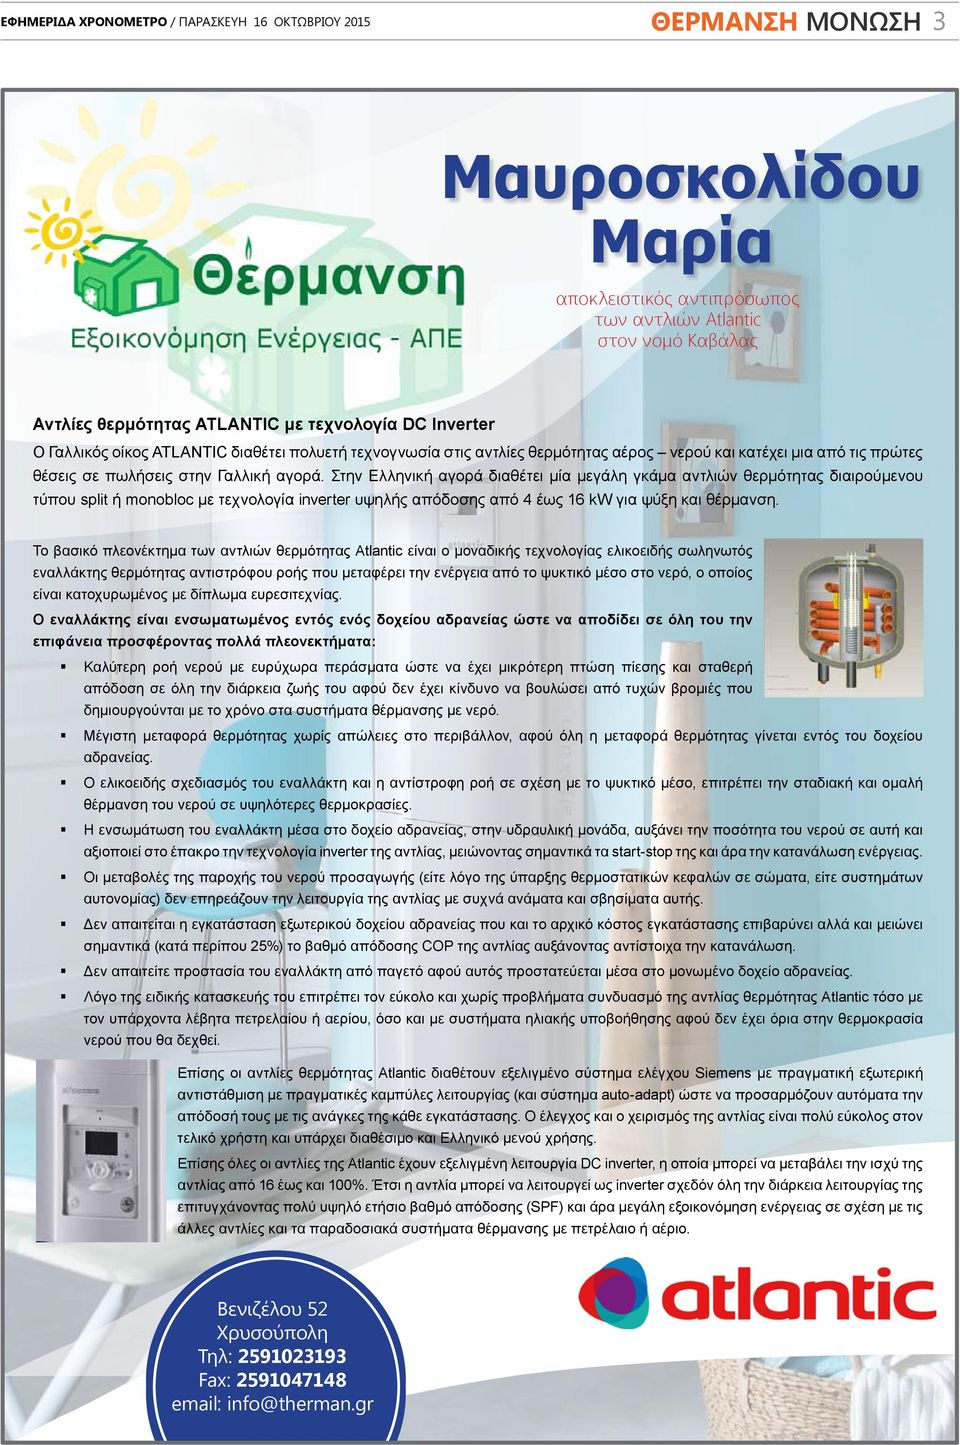 Στην Ελληνική αγορά διαθέτει μία μεγάλη γκάμα αντλιών θερμότητας διαιρούμενου τύπου split ή monobloc με τεχνολογία inverter υψηλής απόδοσης από 4 έως 16 kw για ψύξη και θέρμανση.